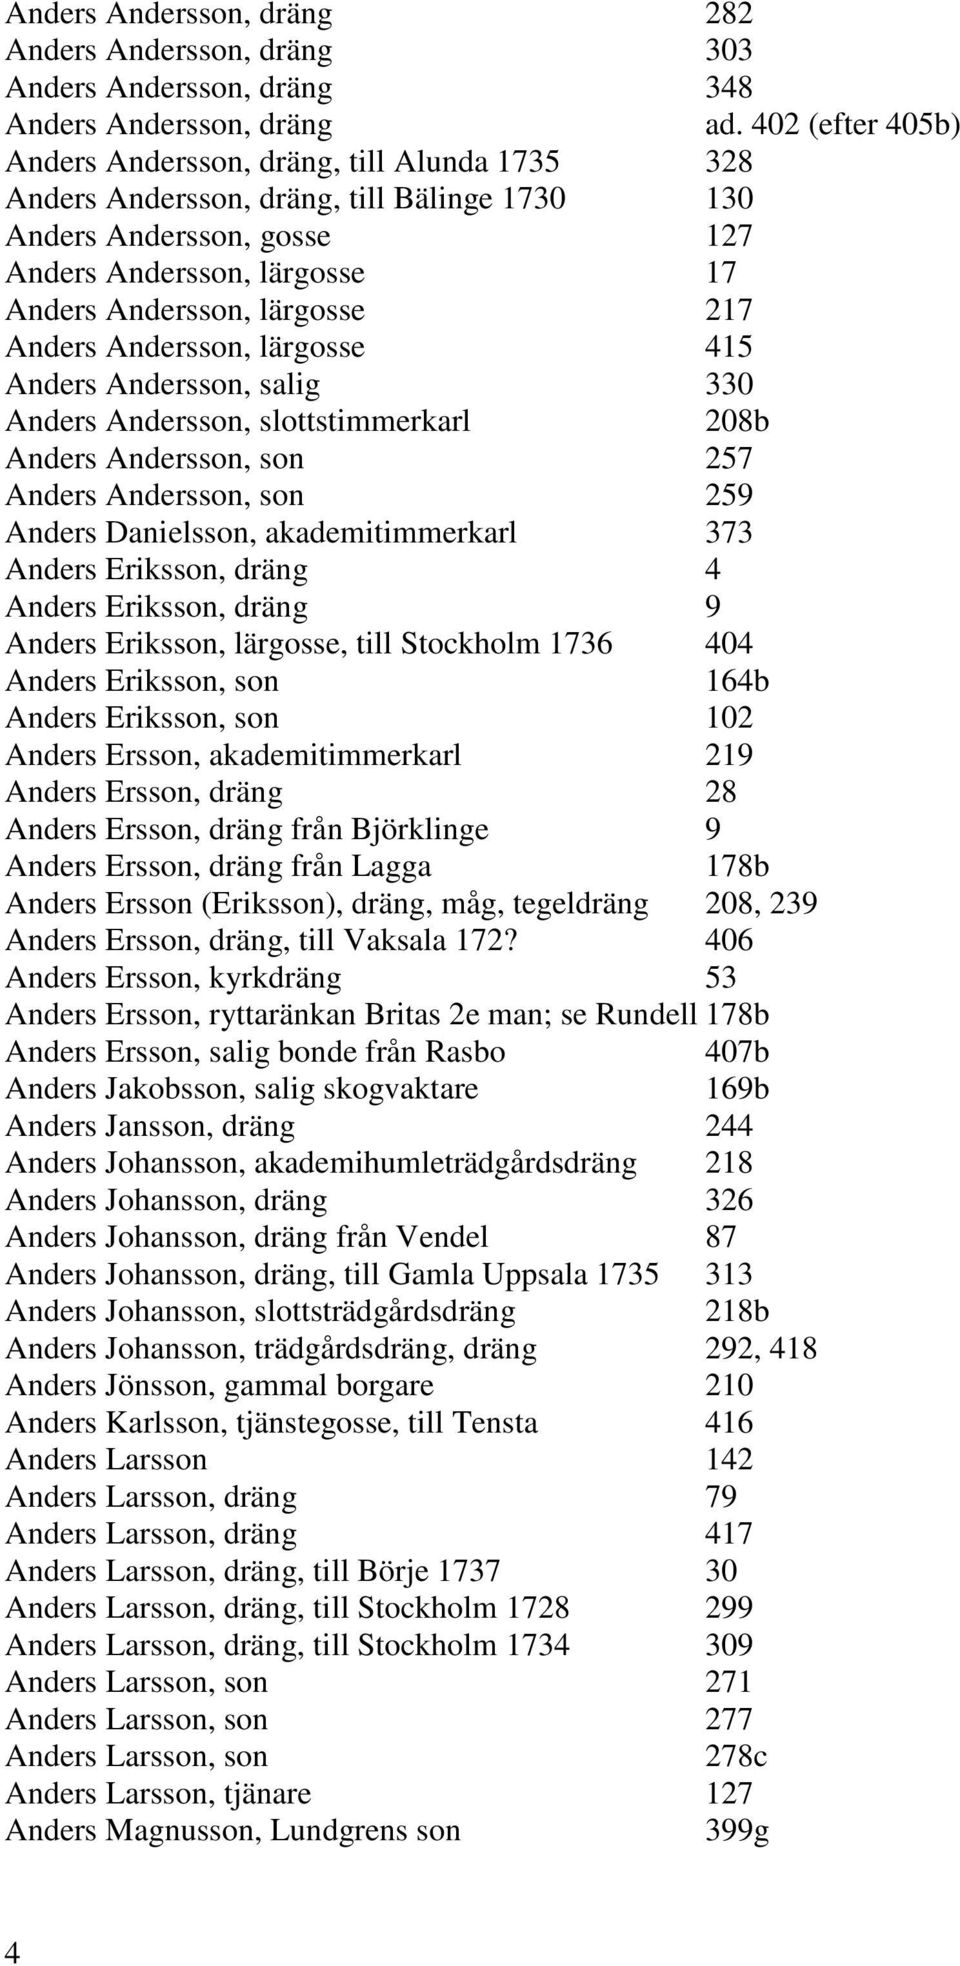 Anders Andersson, lärgosse 415 Anders Andersson, salig 330 Anders Andersson, slottstimmerkarl 208b Anders Andersson, son 257 Anders Andersson, son 259 Anders Danielsson, akademitimmerkarl 373 Anders